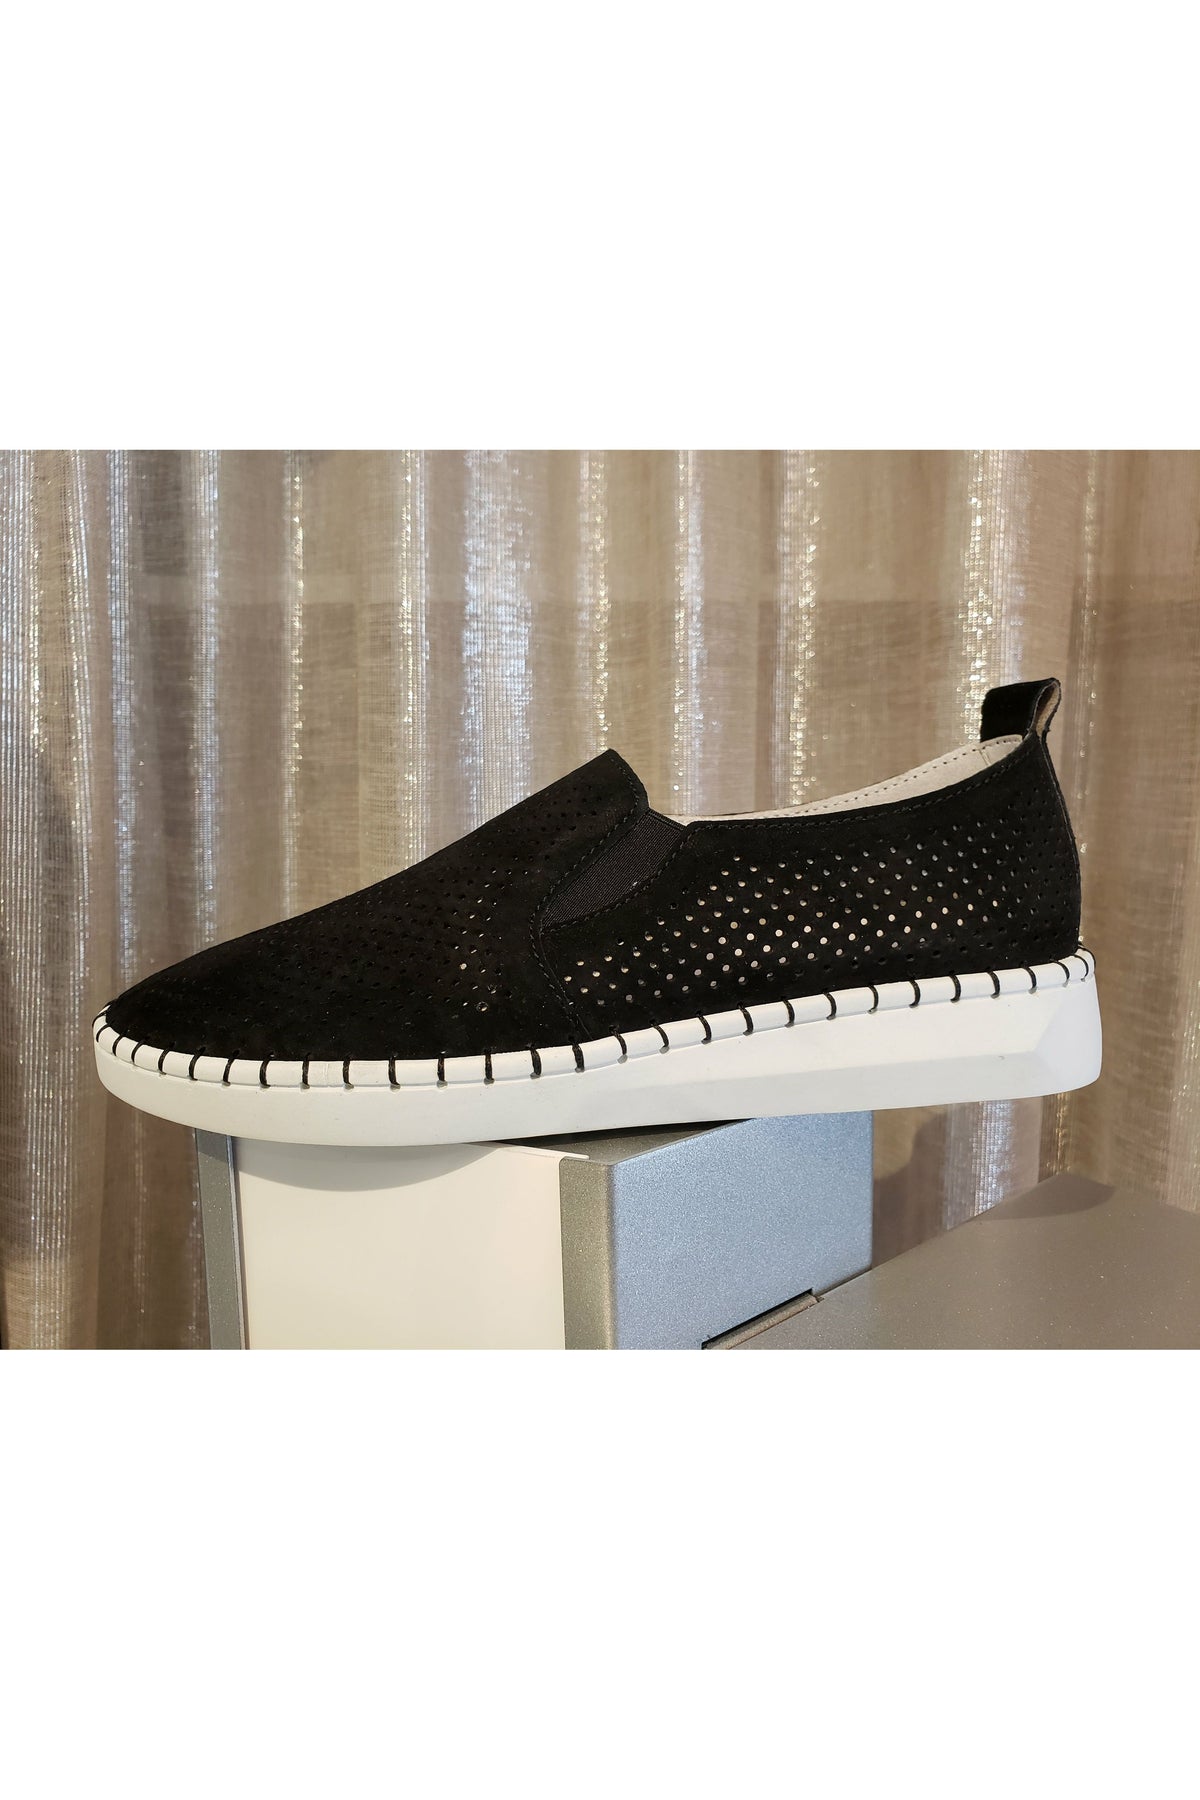 Bernie Mev Slip-On Fashion Sneaker - Style TW98, outside, black